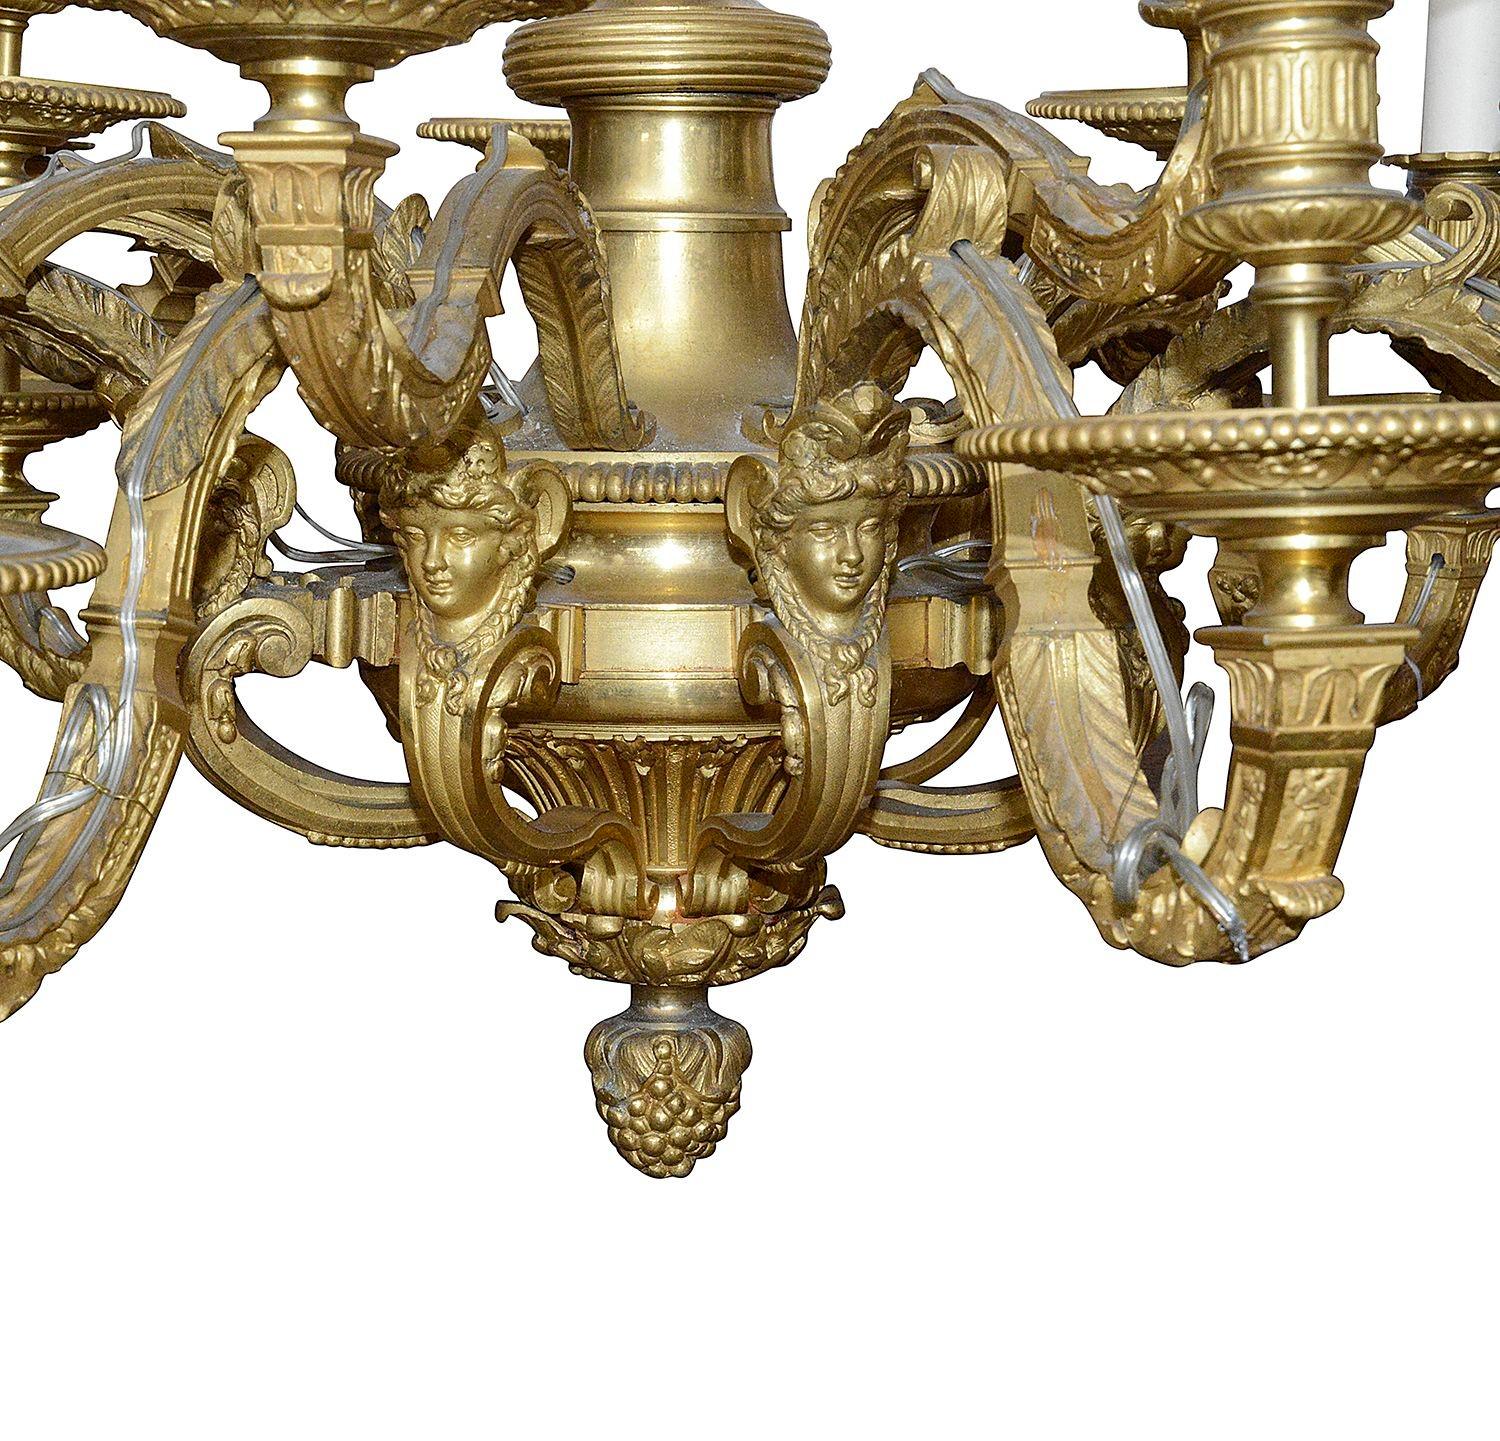 Très impressionnant lustre à 18 branches de style Louis XVI en bronze doré du 19e siècle, avec des montures monopodes classiques sur la colonne centrale.

Lot 74